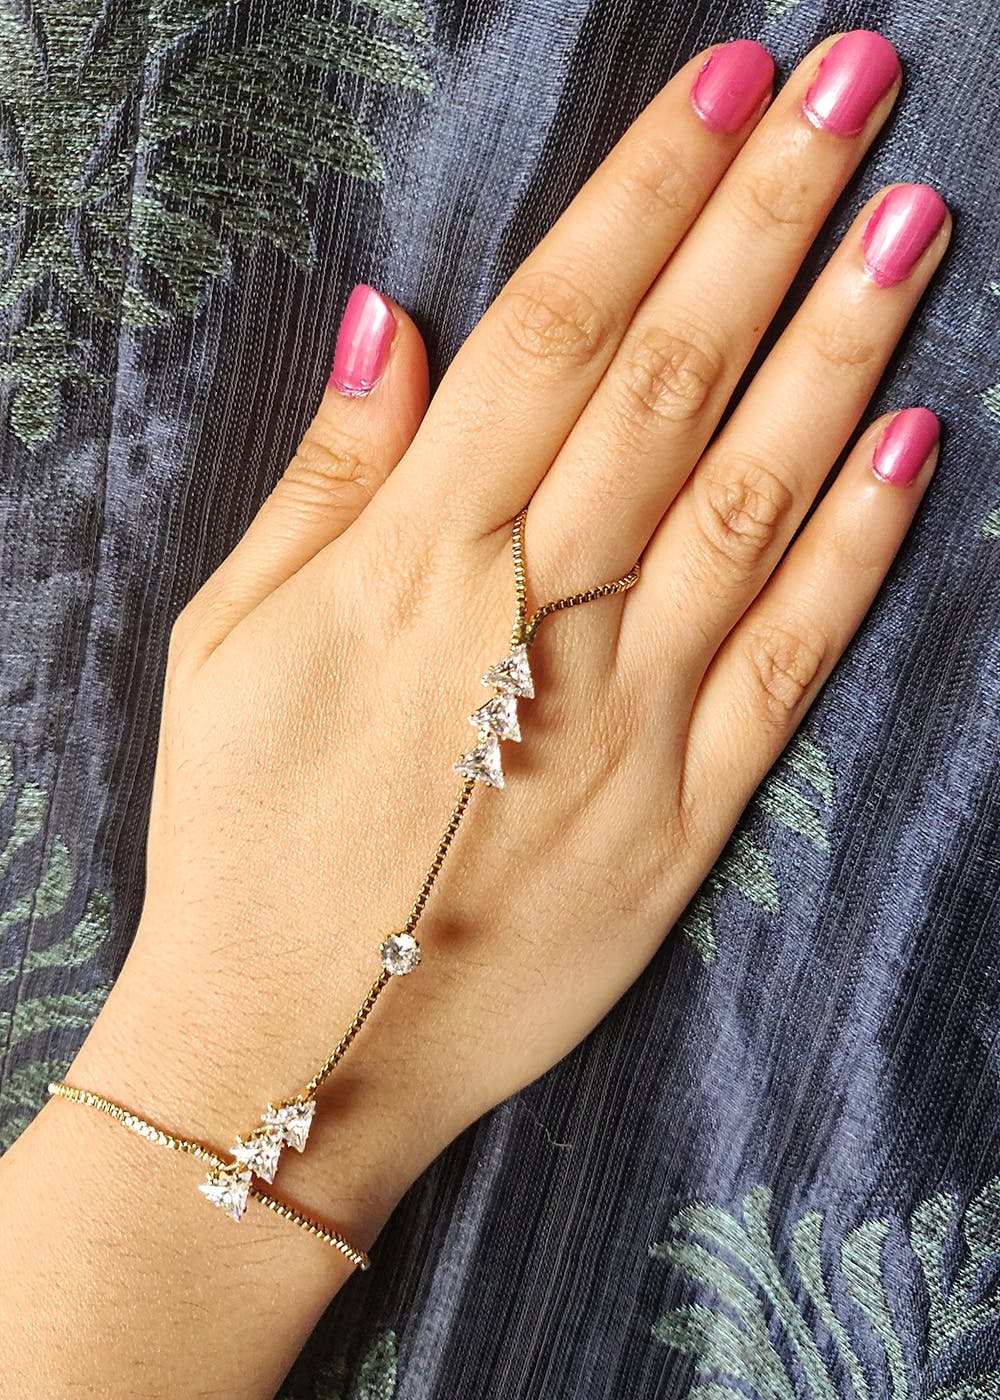 Buy Gold Diamond Slave Bracelet Ring Finger Bracelet Hand Chain Online in  India  Etsy